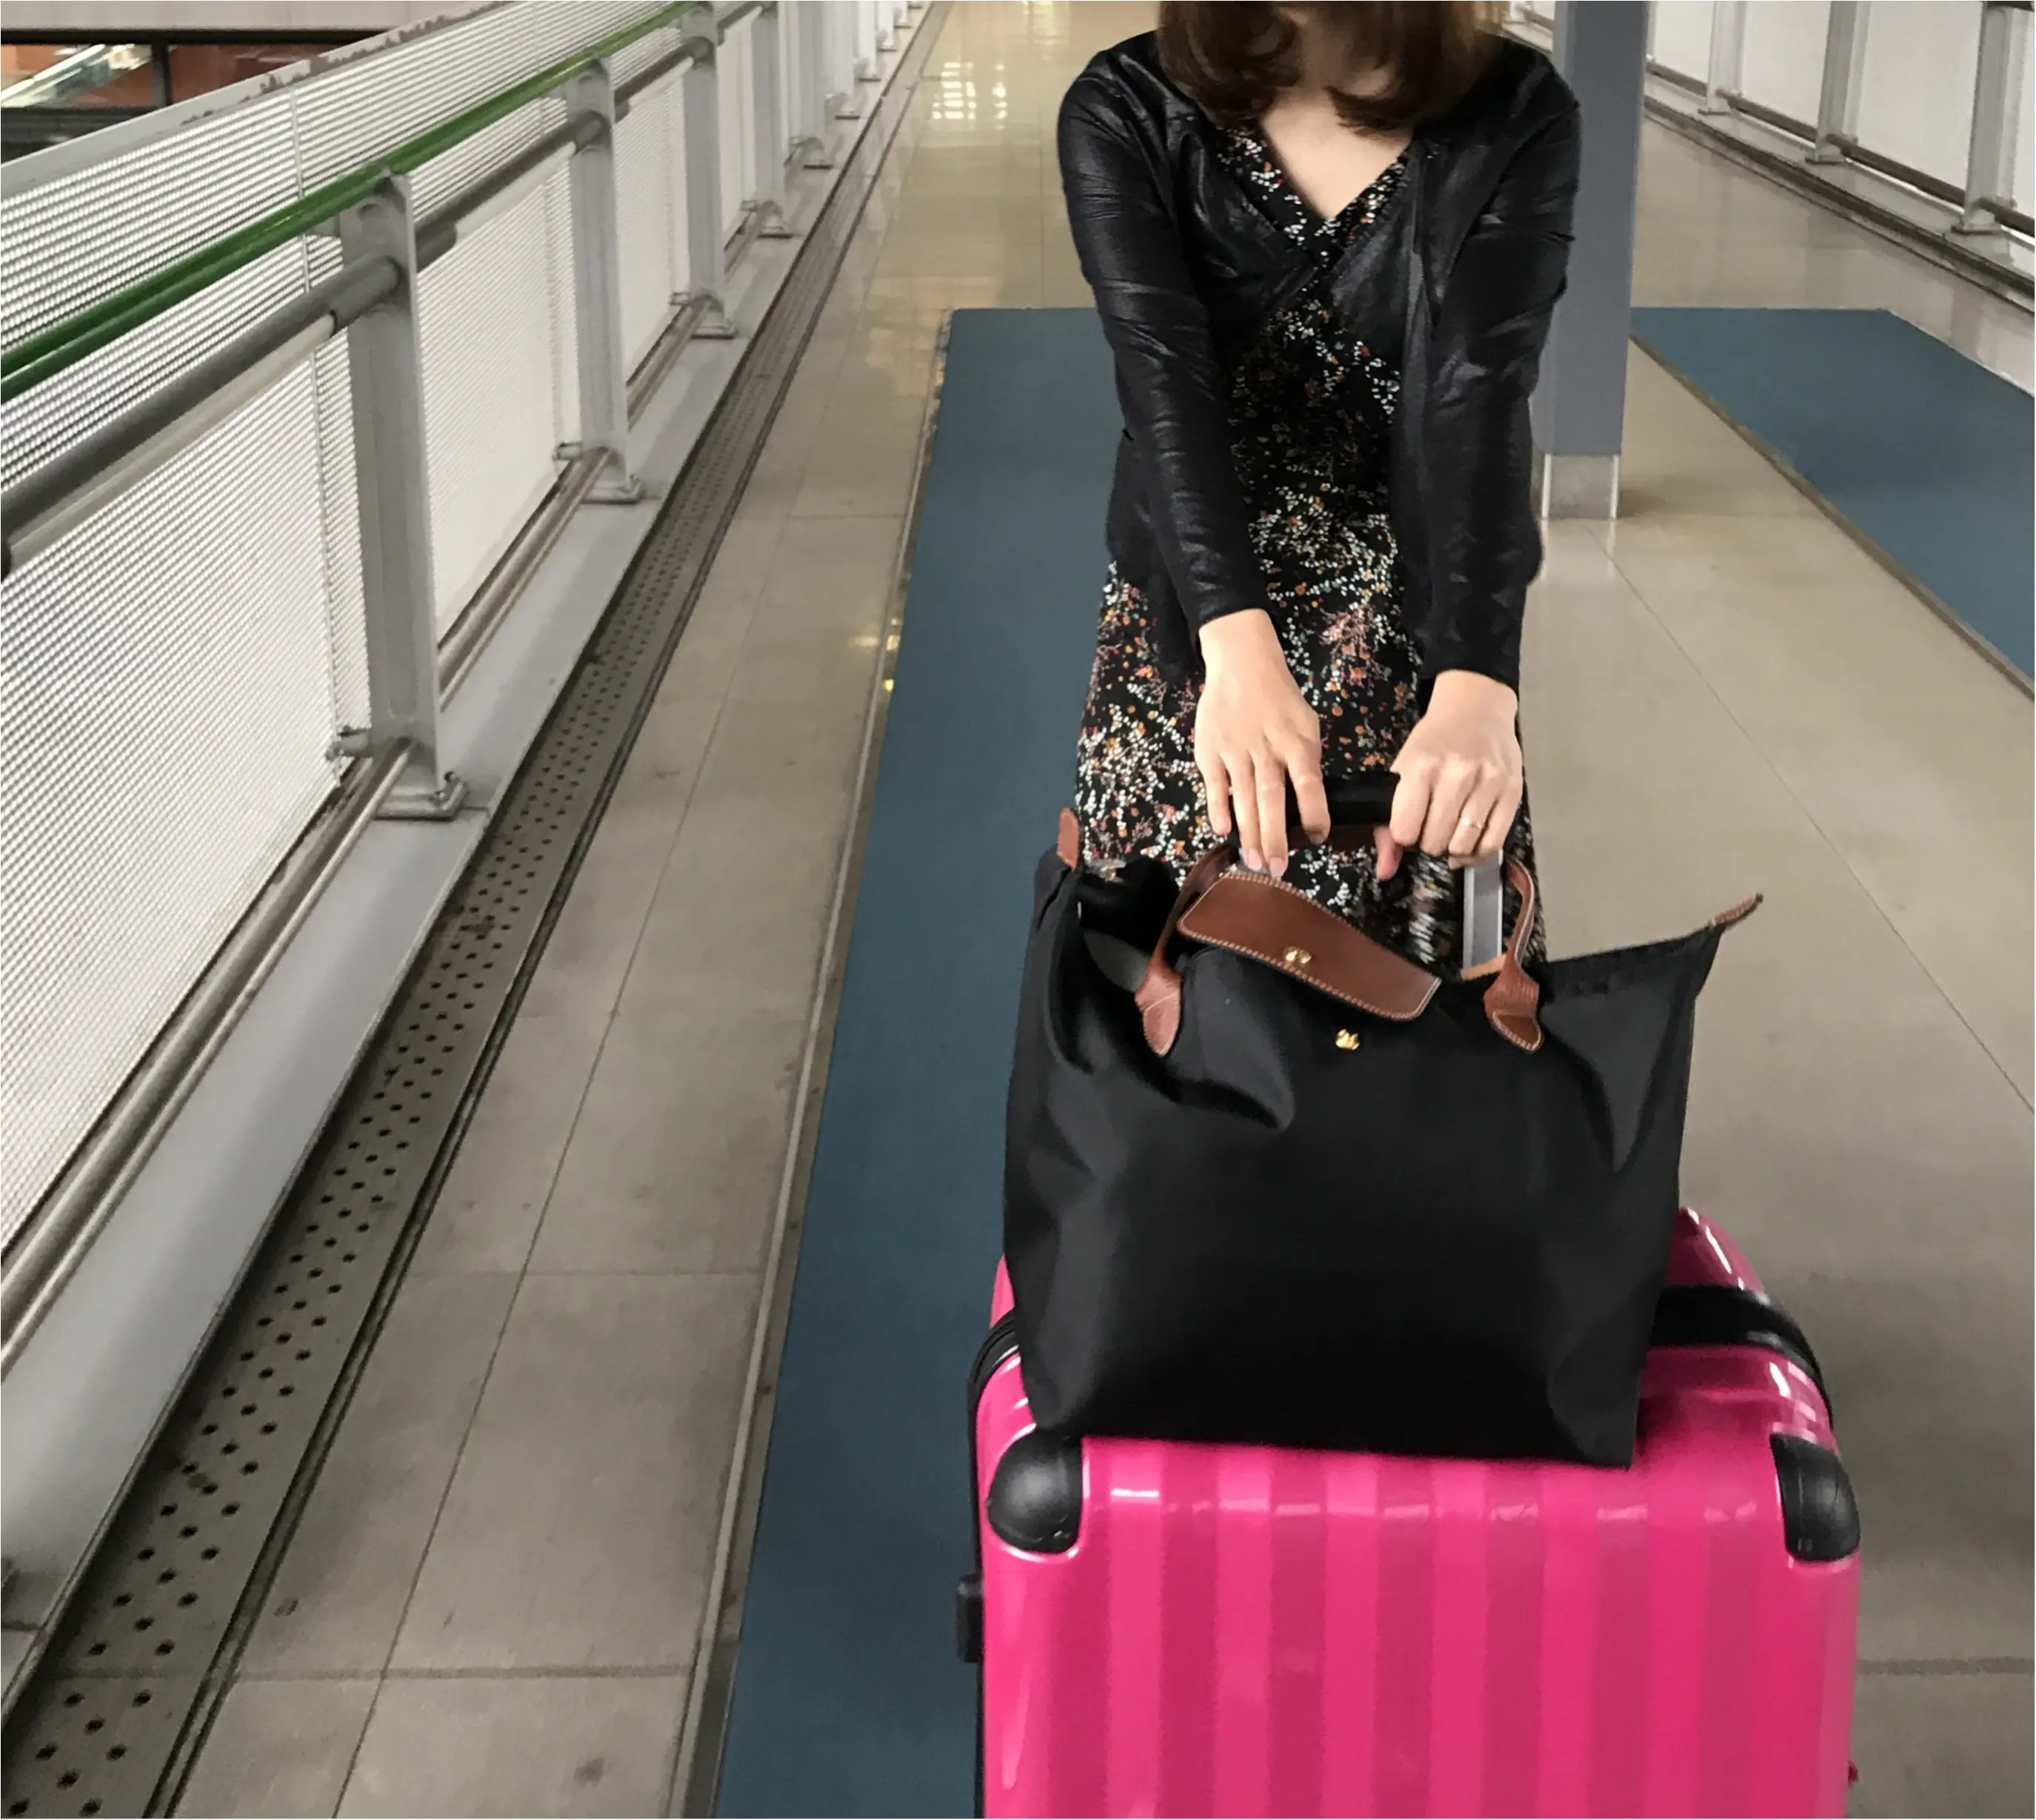 Travel 旅行におすすめのバッグやパッキング術 機内での服装など 役立つ情報をご紹介 Moreインフルエンサーズブログ Daily More